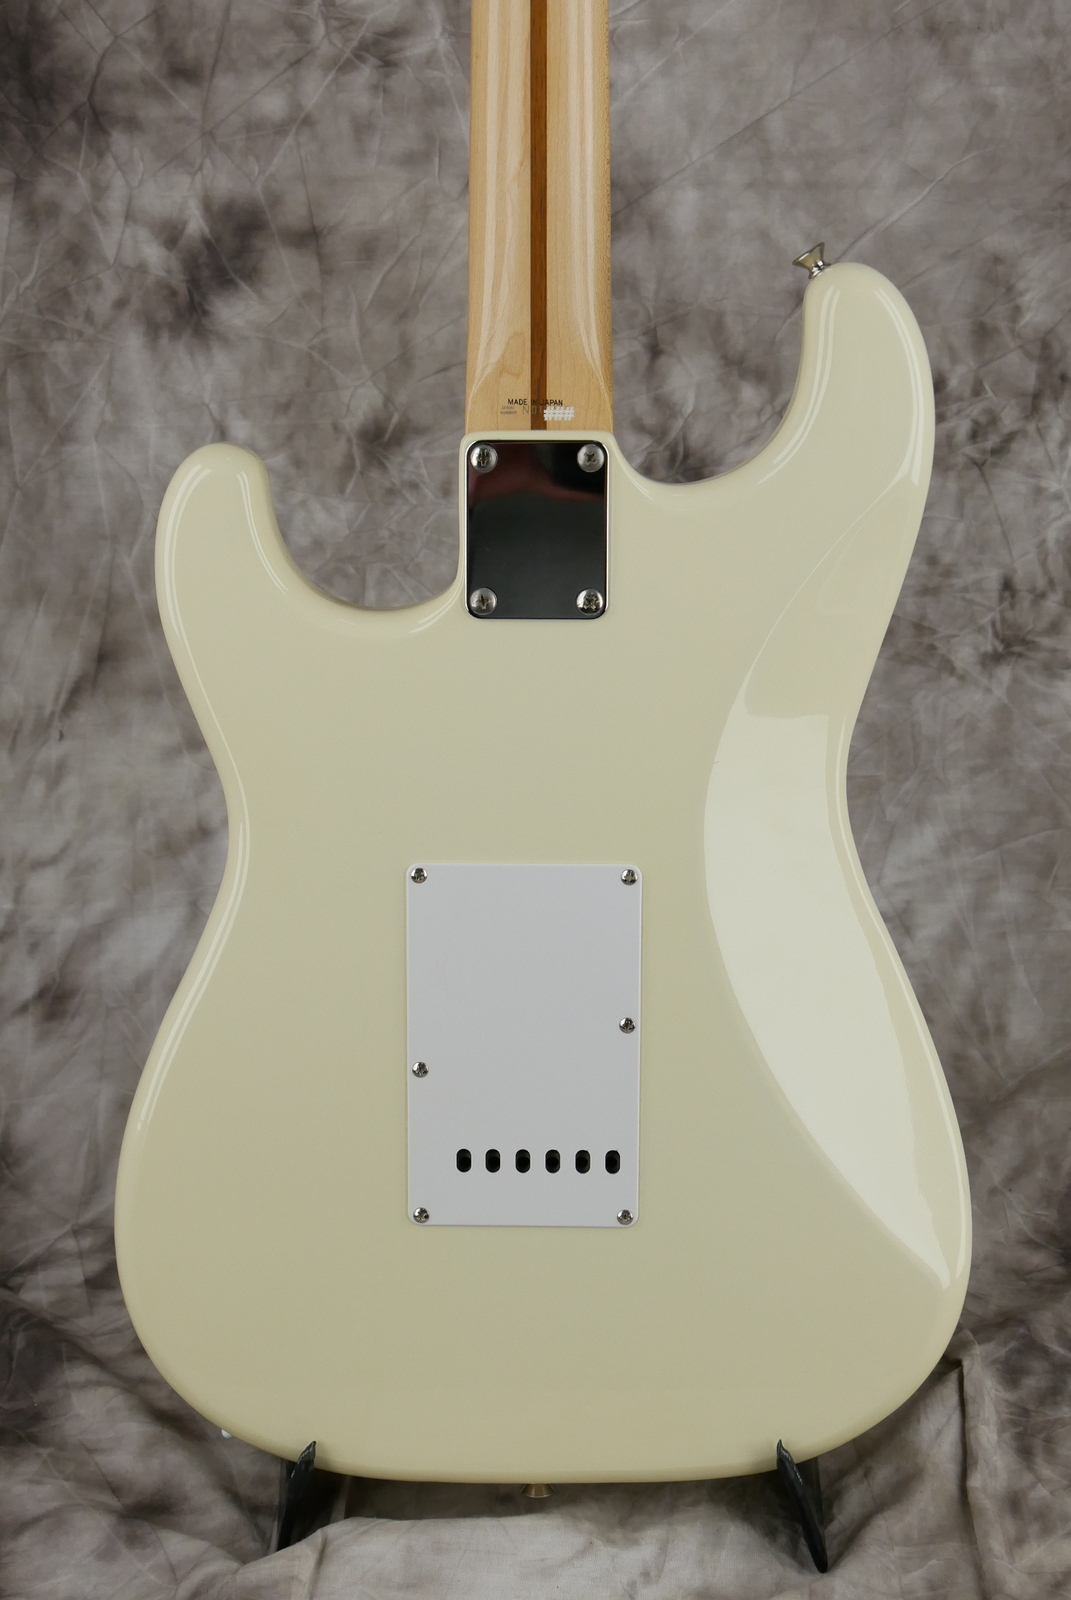 Fender_Stratocaster_Squier_series_Japan_olympic_white_1993-004.JPG